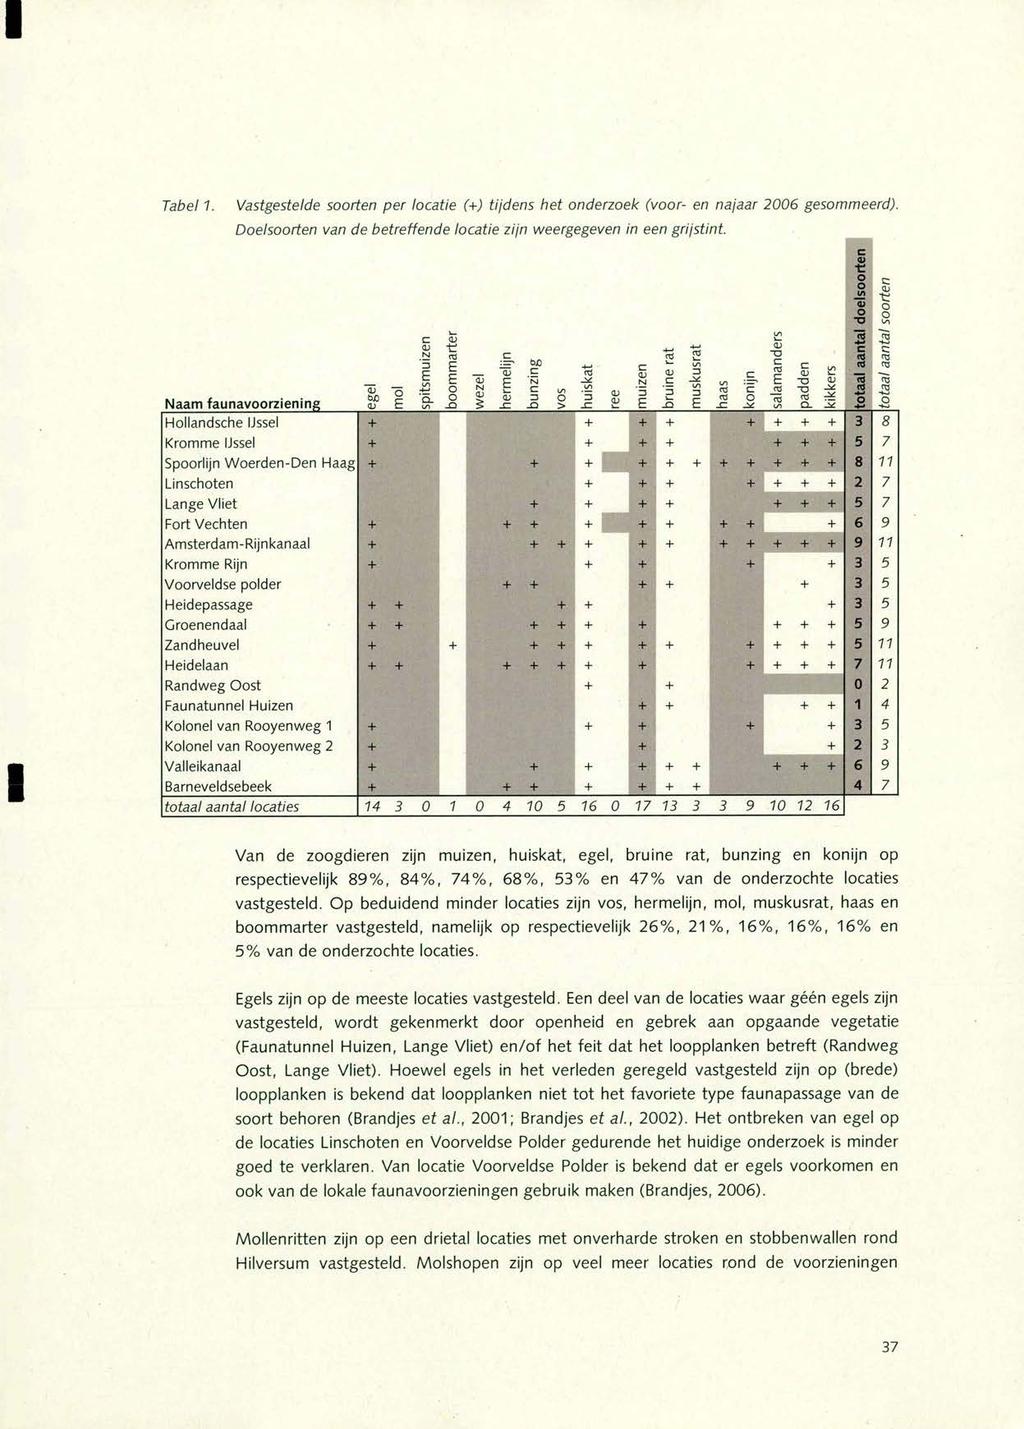 Tabel 1. Vastgestelde soorten per locatie (+) ti/dens het onderzoek (voor- en na/aar 2006 gesommeerd). Doelsoorten van de betreffende locatie zijn weergegeven in een gristint.